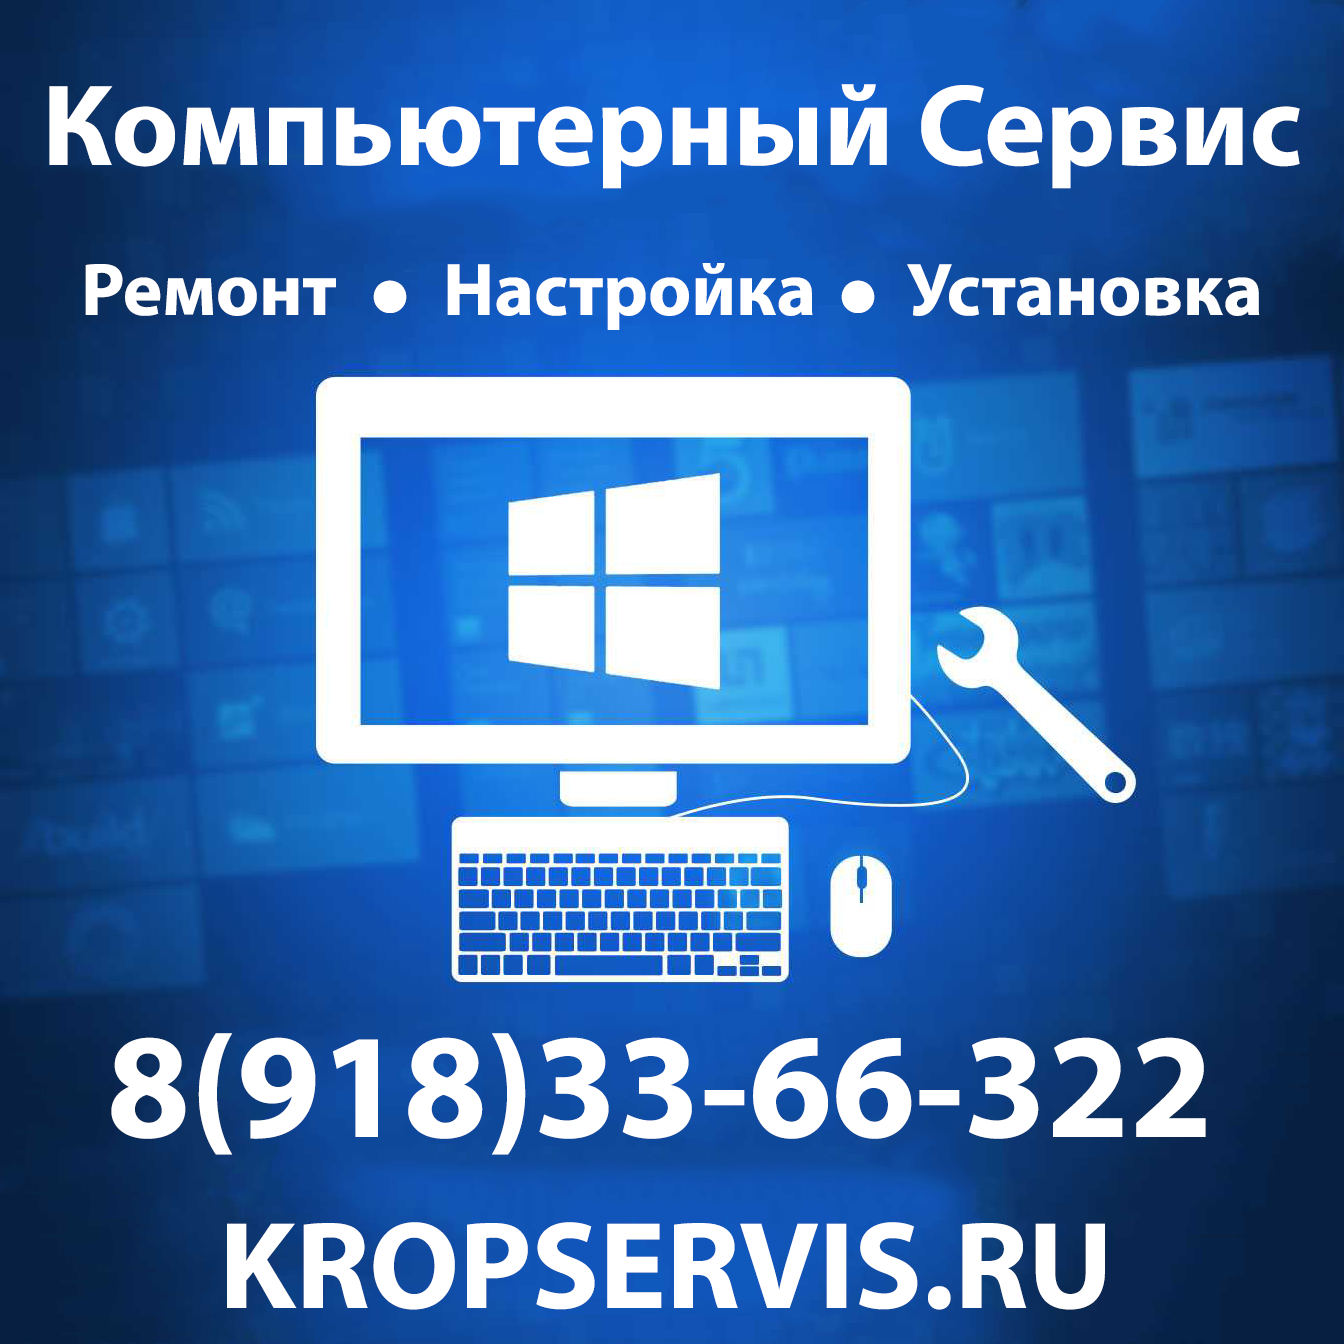 Компьютерный Сервис в Кропоткине в городе Кропоткин, фото 1, Краснодарский край